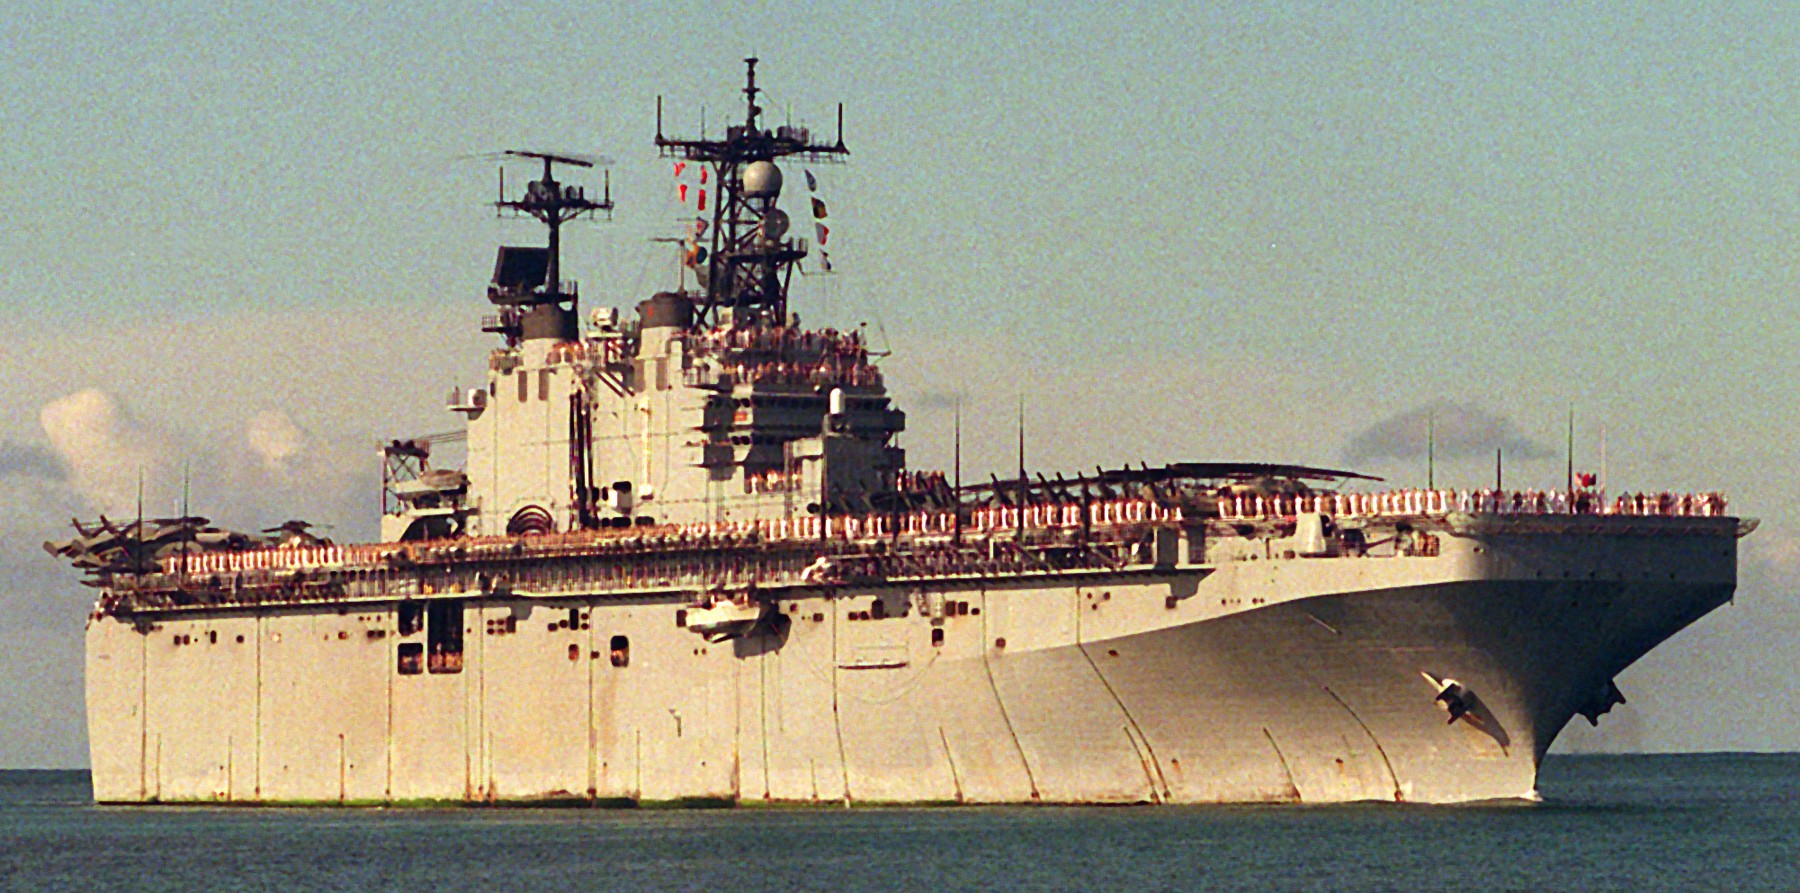 lha-1 uss tarawa amphibious assault ship us navy 79